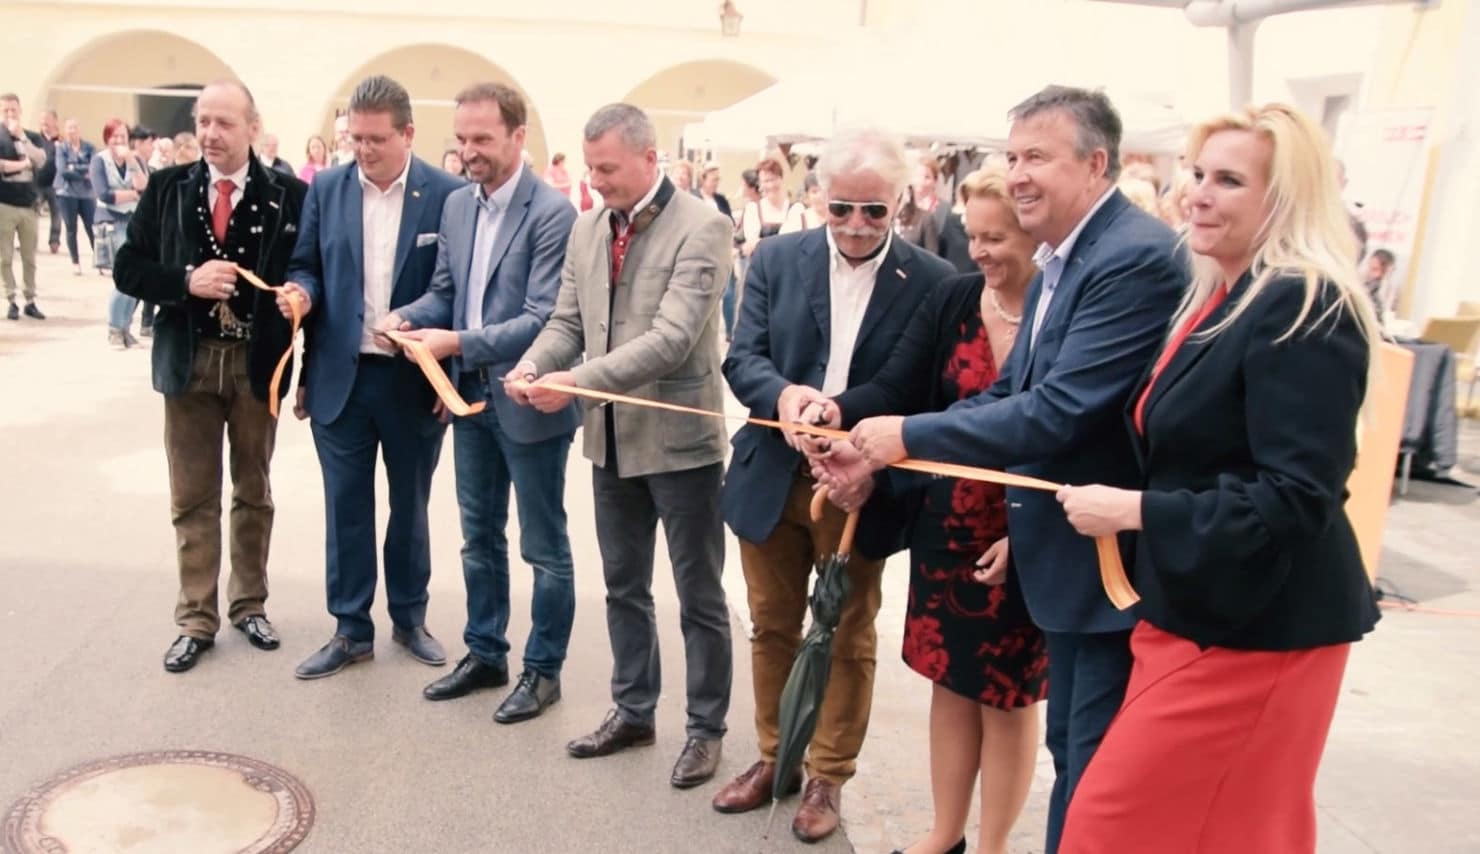 Der 7. Kunsthandwerksmarkt wurde gestern, Freitag dem 4. Mai 2018, feierlich eröffnet.